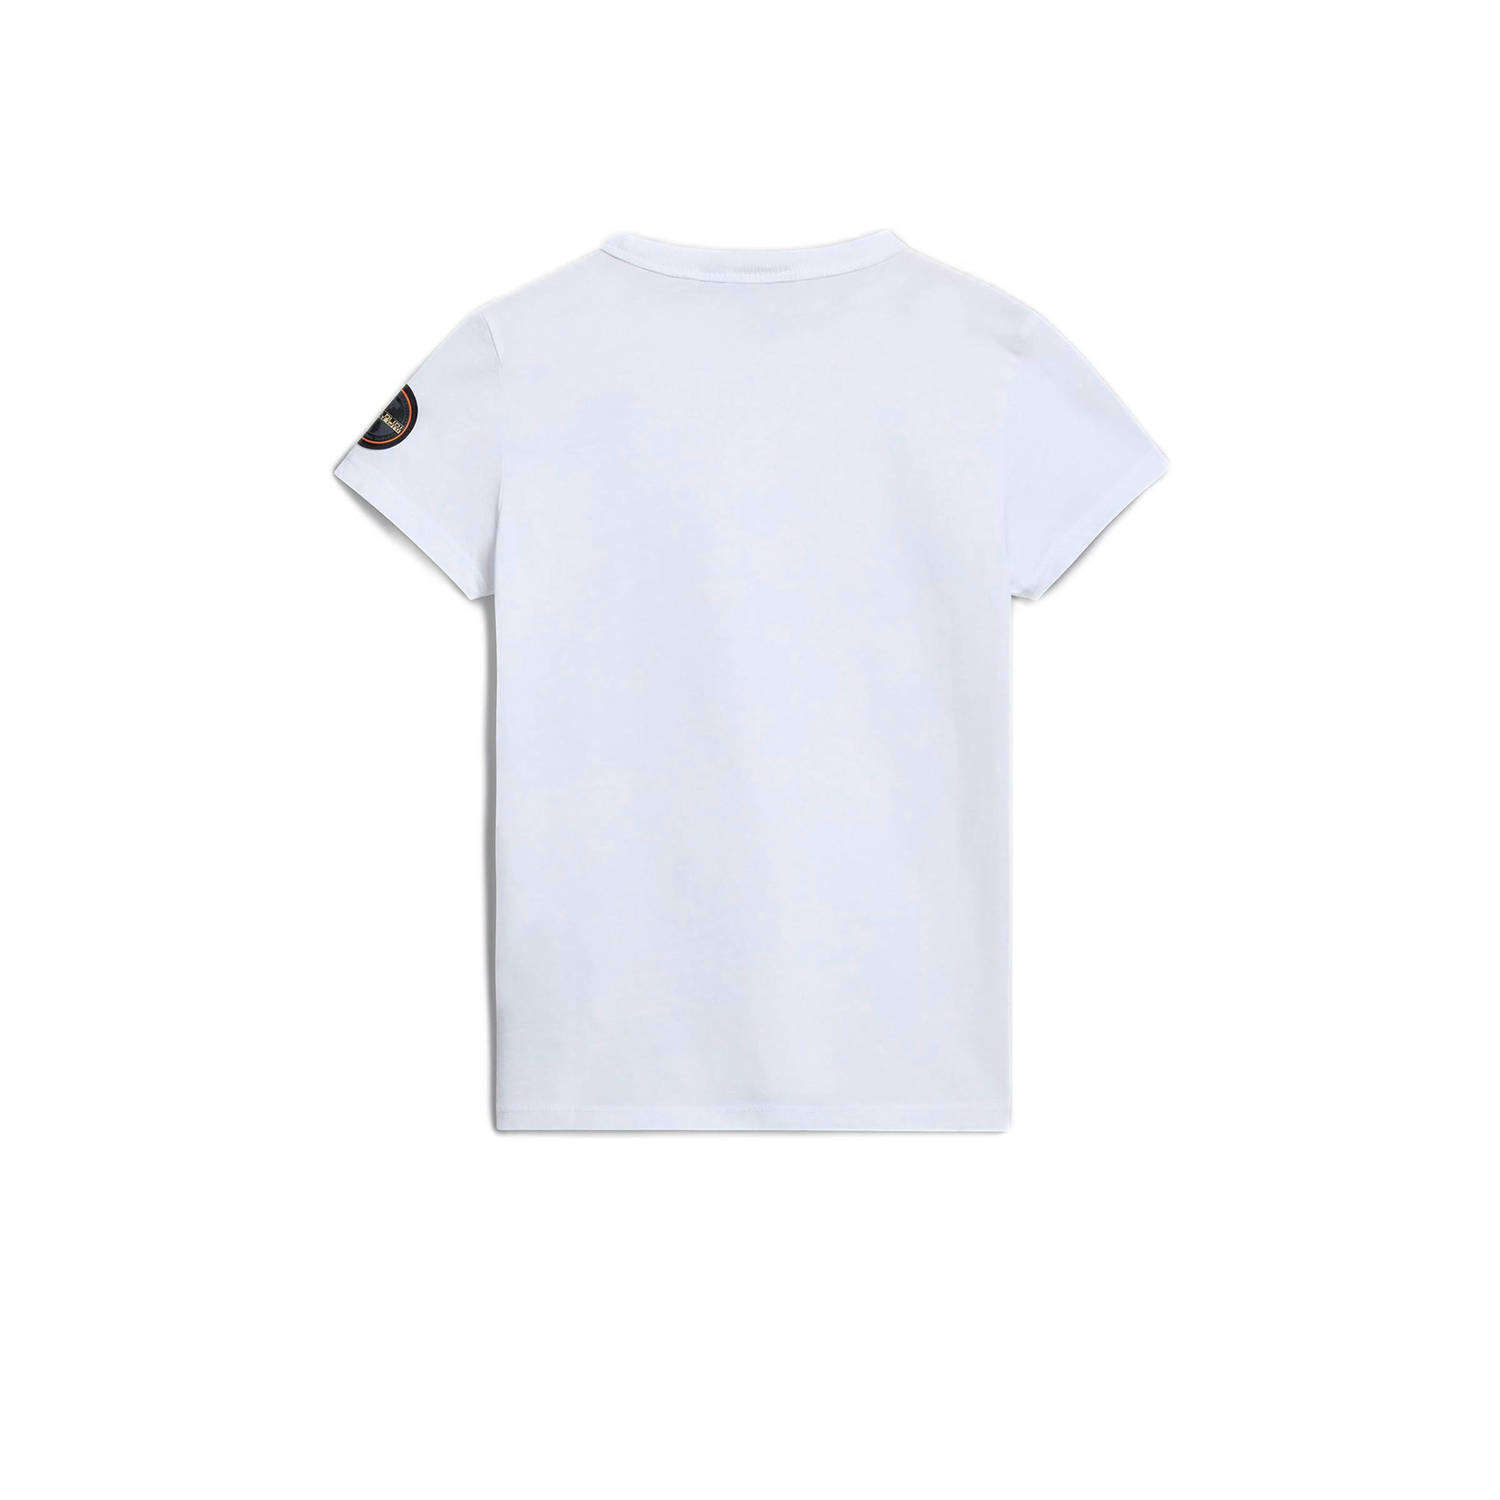 Napapijri T-shirt met logo wit